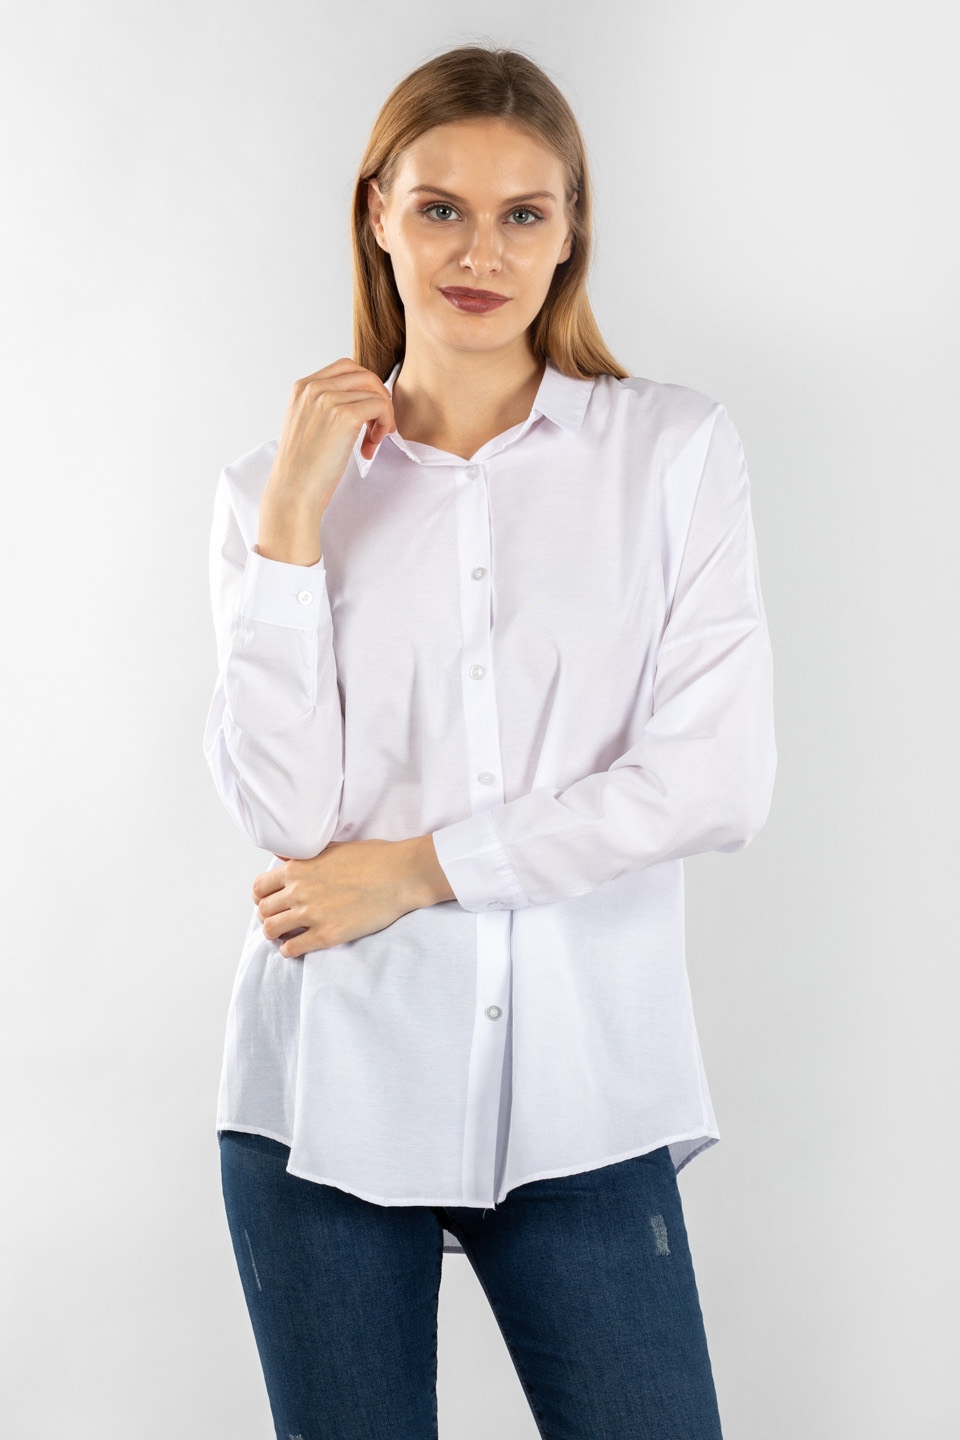 Tunik gömlek-3013 Beyaz